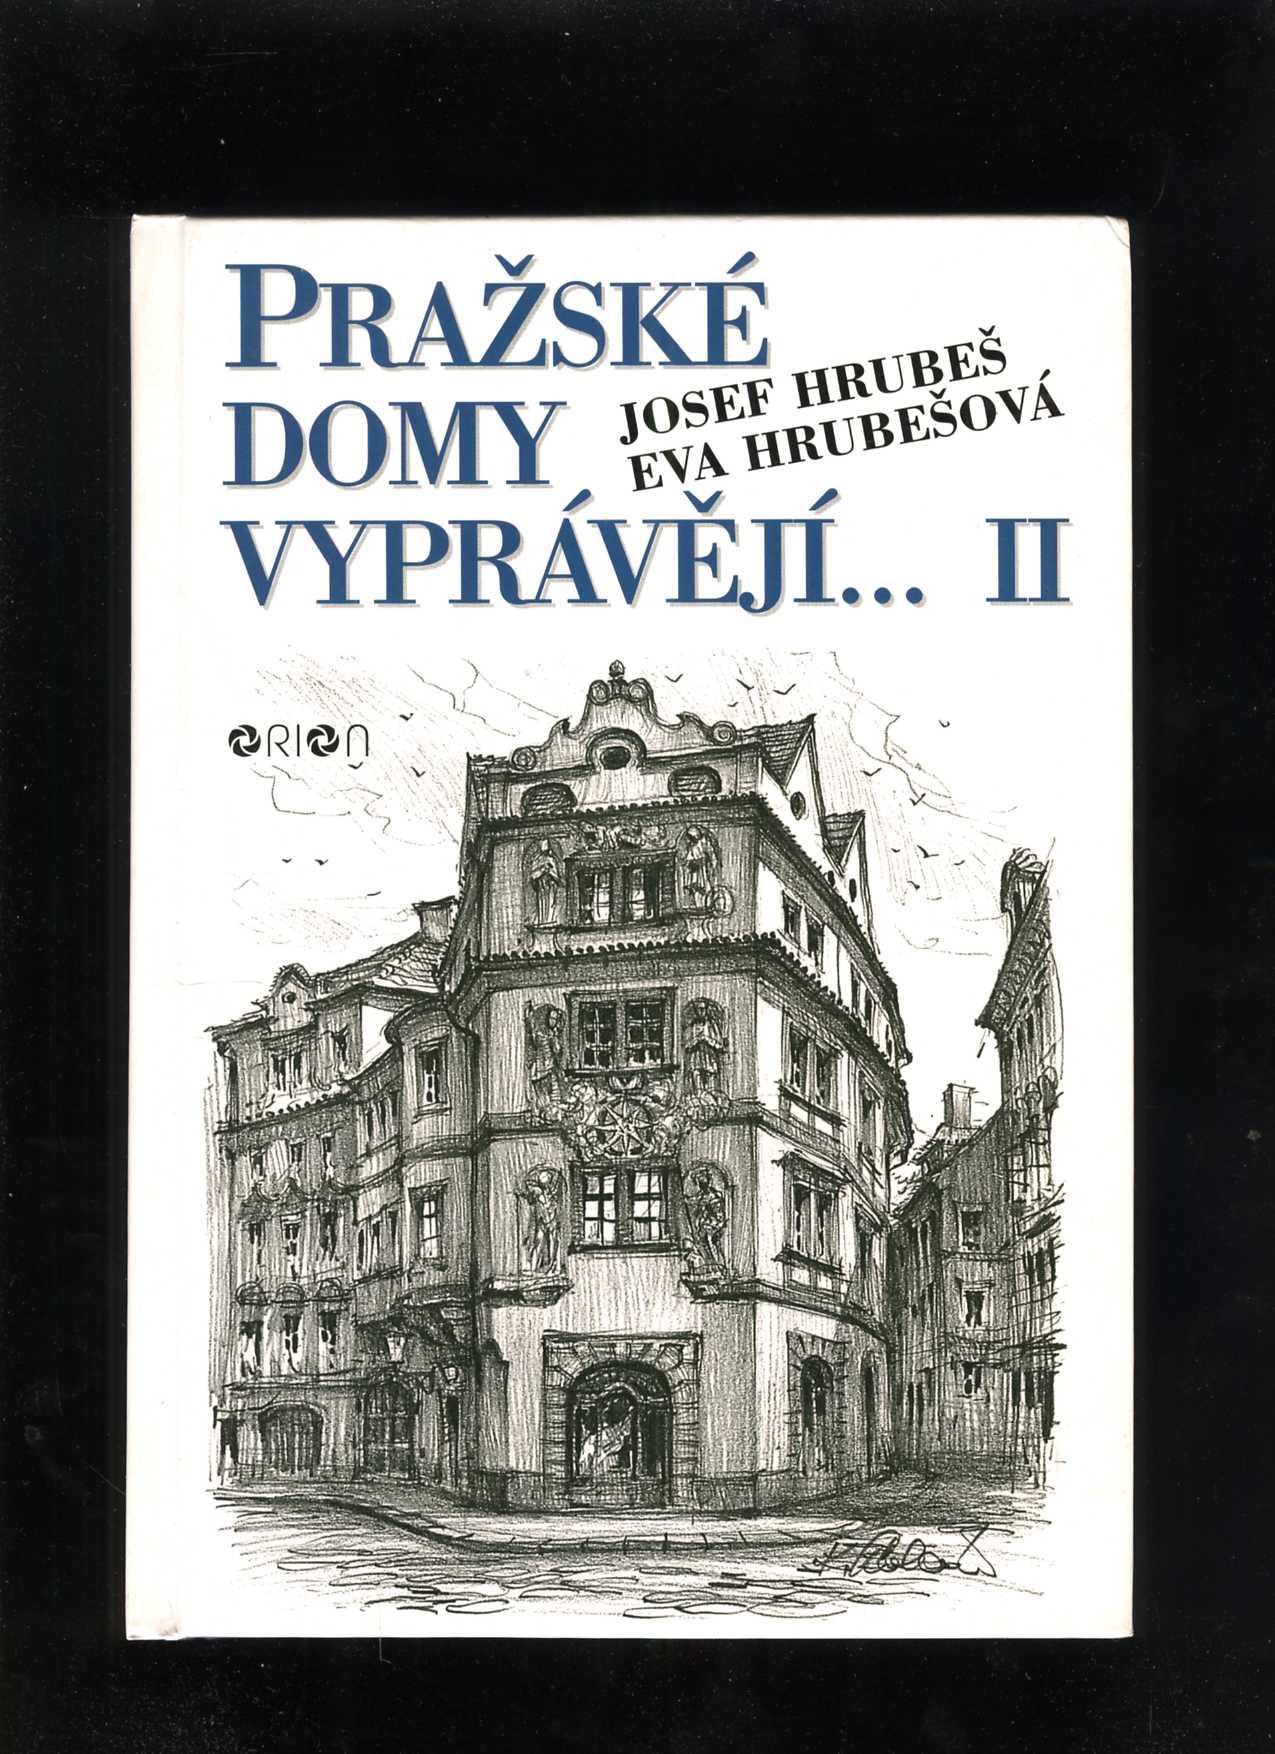 Pražské domy vyprávějí... II. (Josef Hrubeš, Eva Hrubešová)